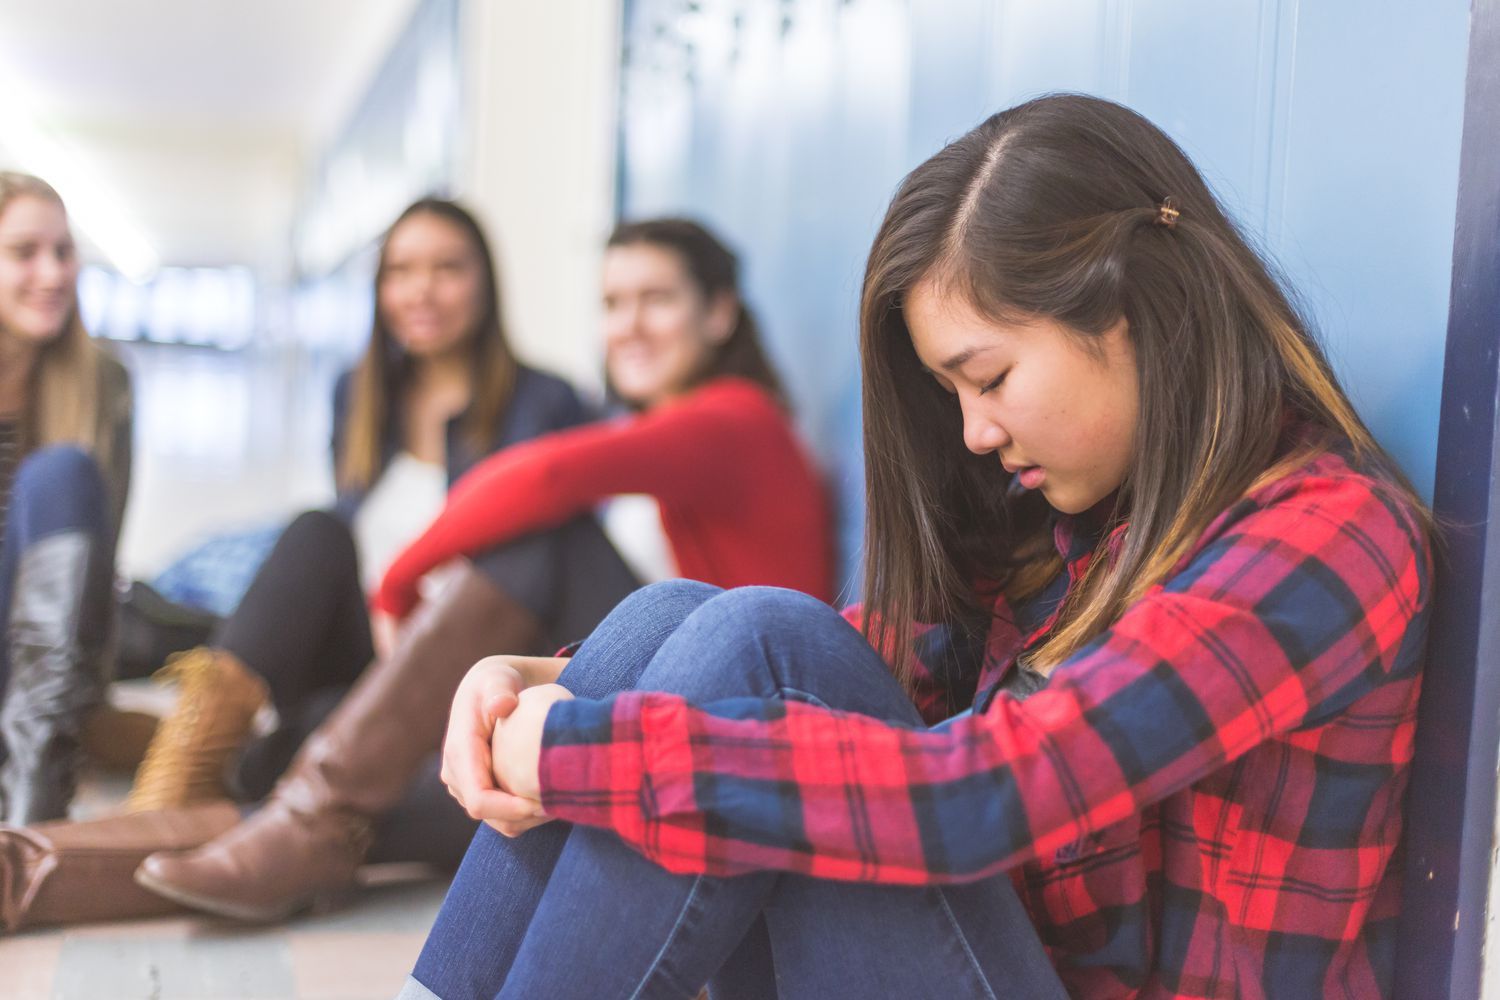 Buscan a joven debido a bullying escolar